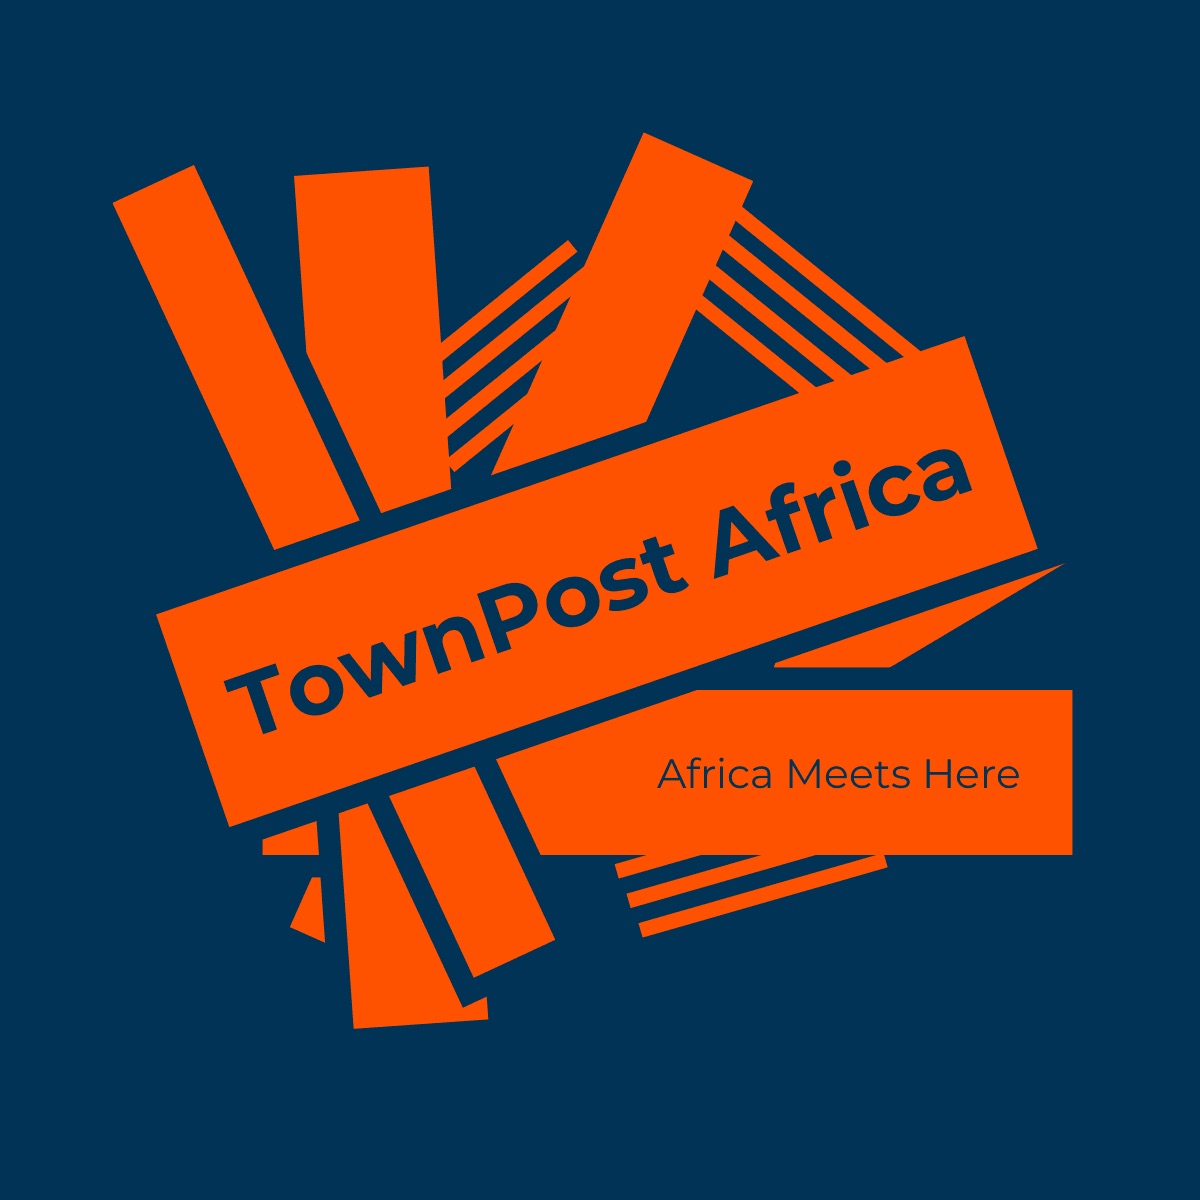 www.townpostafrica.com